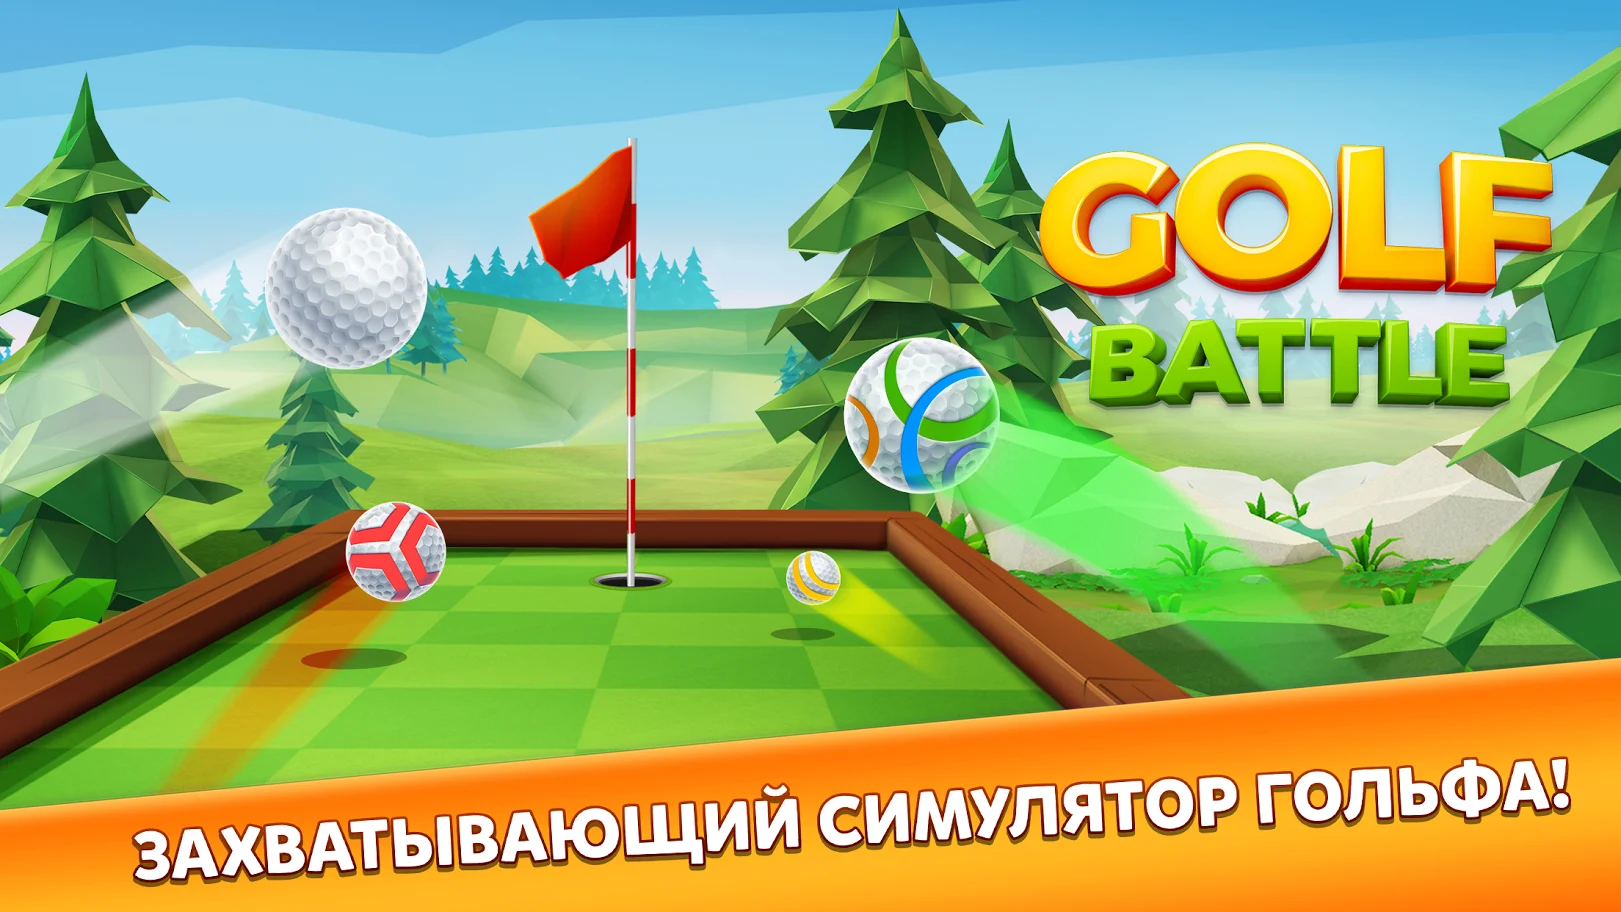 Golf Battle, изображение №7